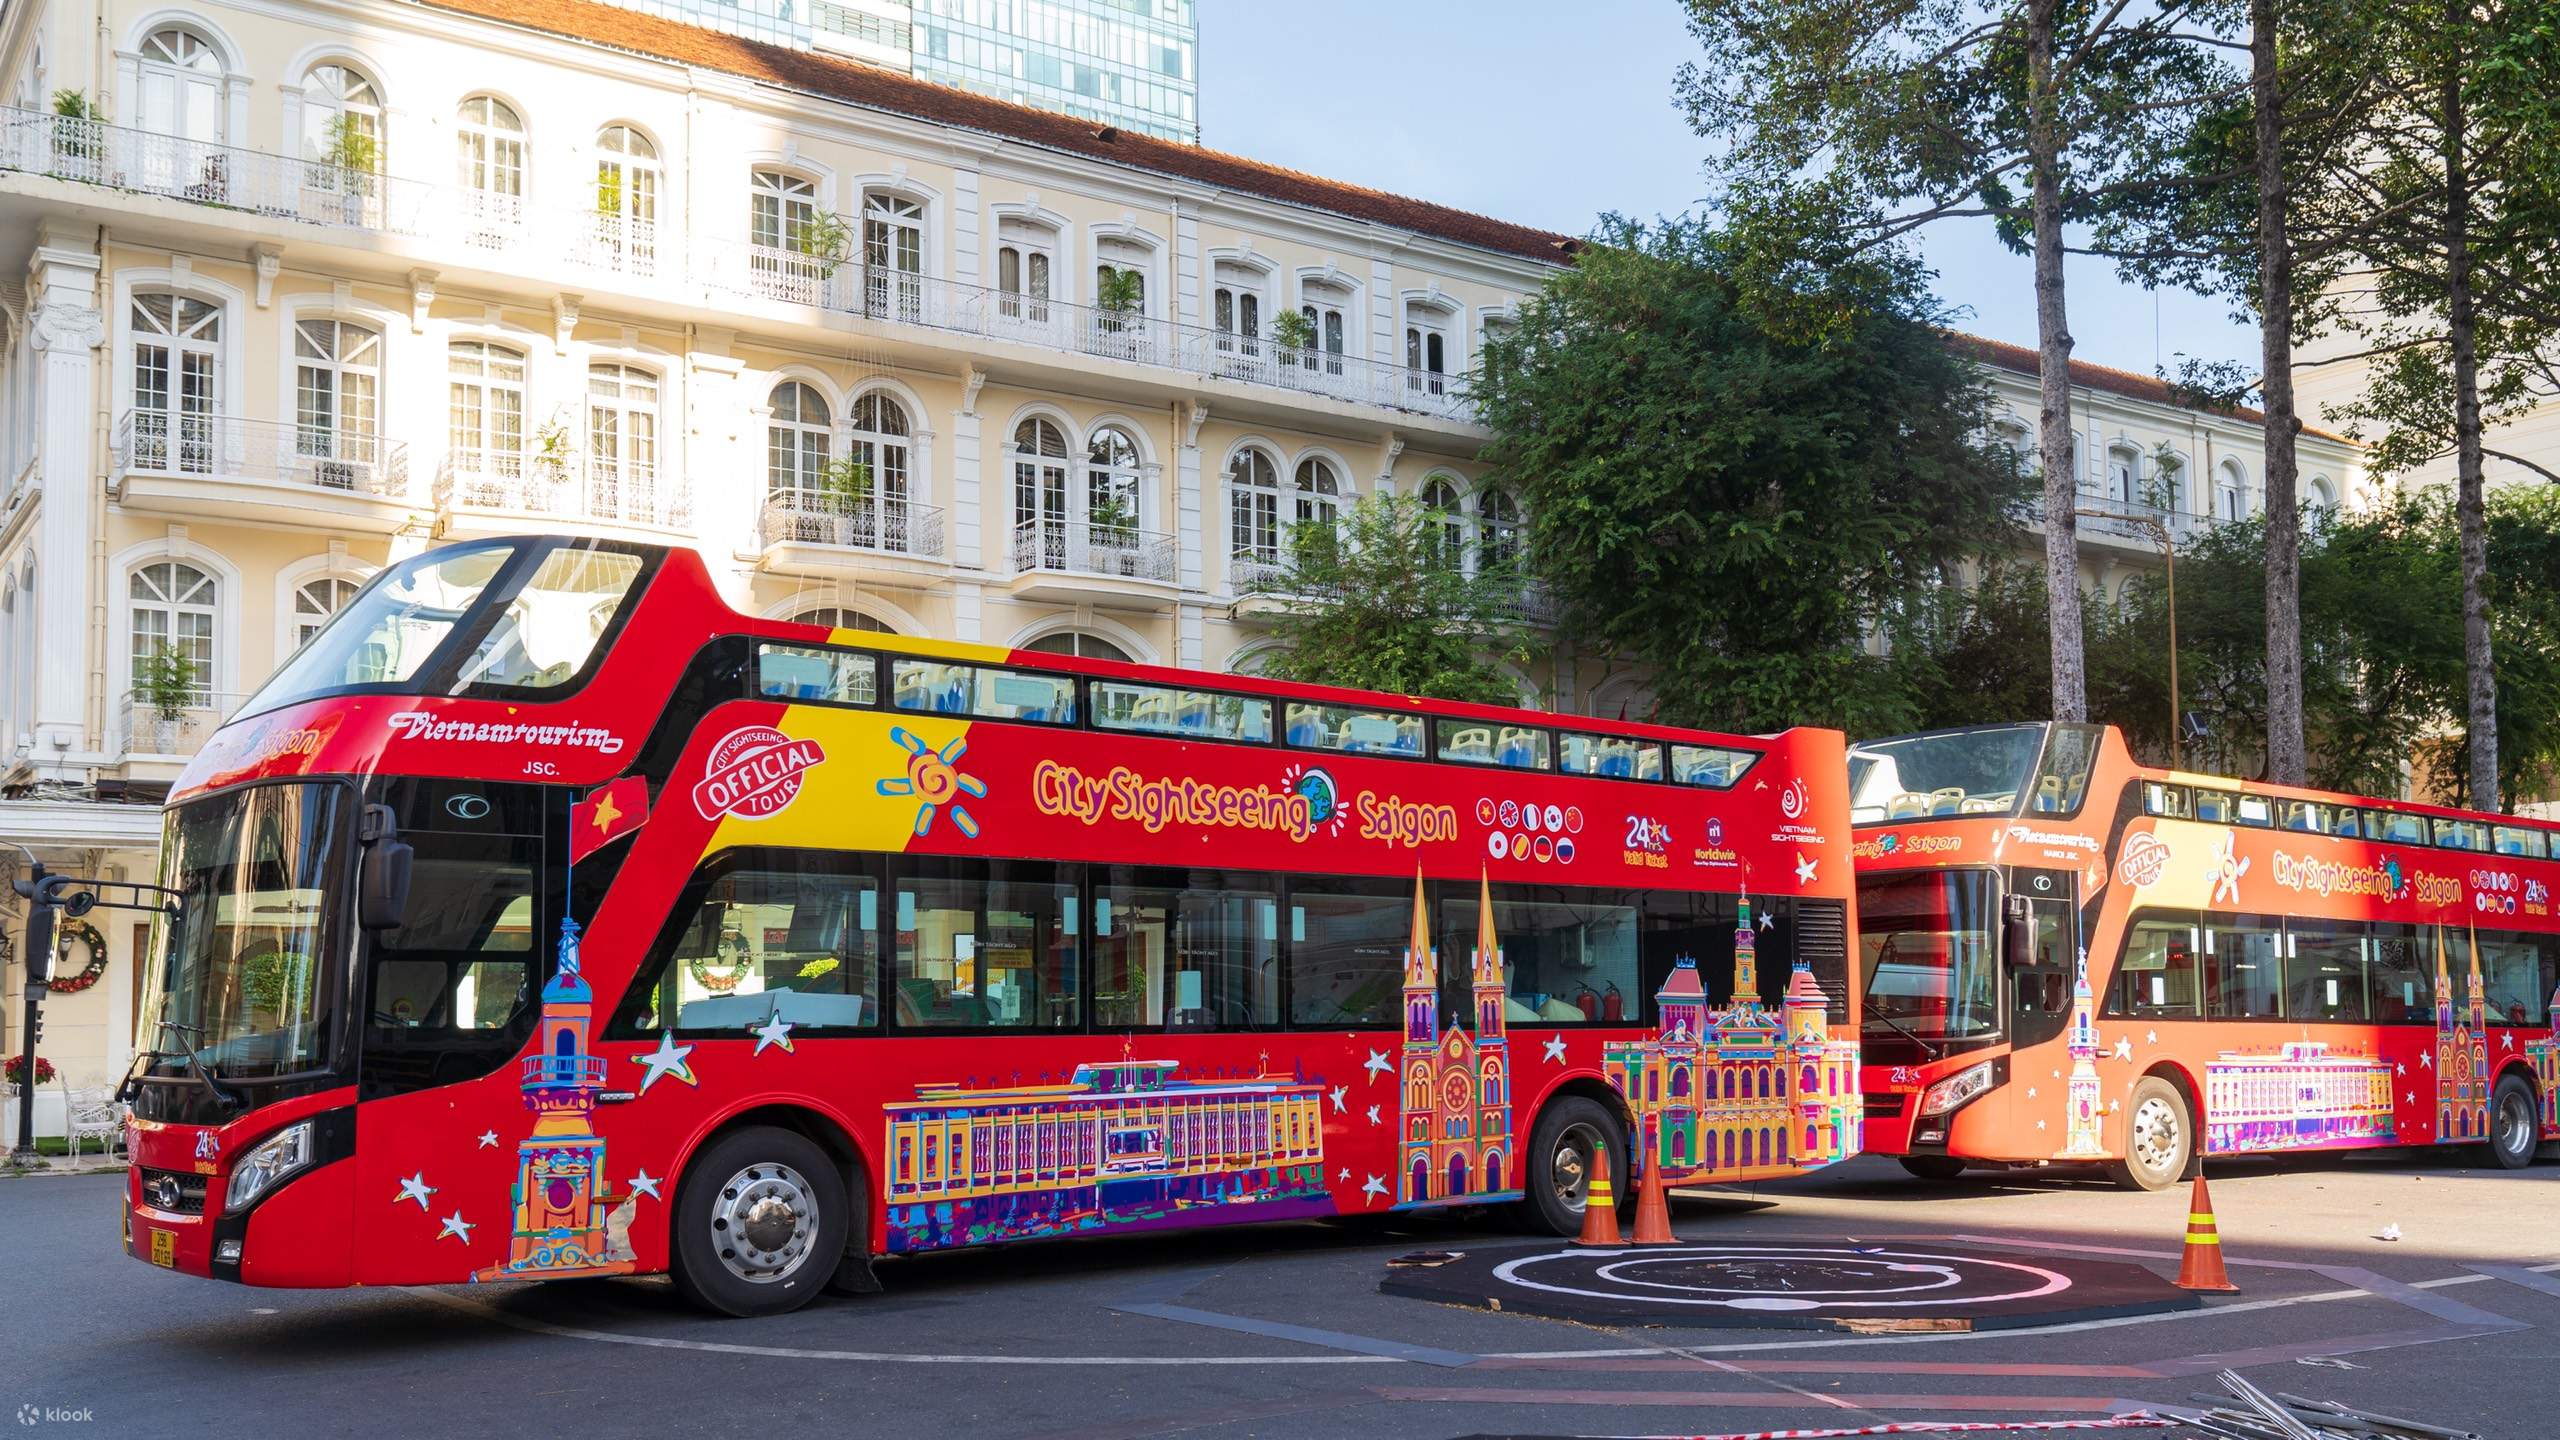 Vé xe buýt hop on hop off là cách tuyệt vời để khám phá các khu phố của thành phố theo phong cách riêng của mình. Hãy mua vé và bắt đầu hành trình khám phá sự đa dạng và hấp dẫn của thành phố.